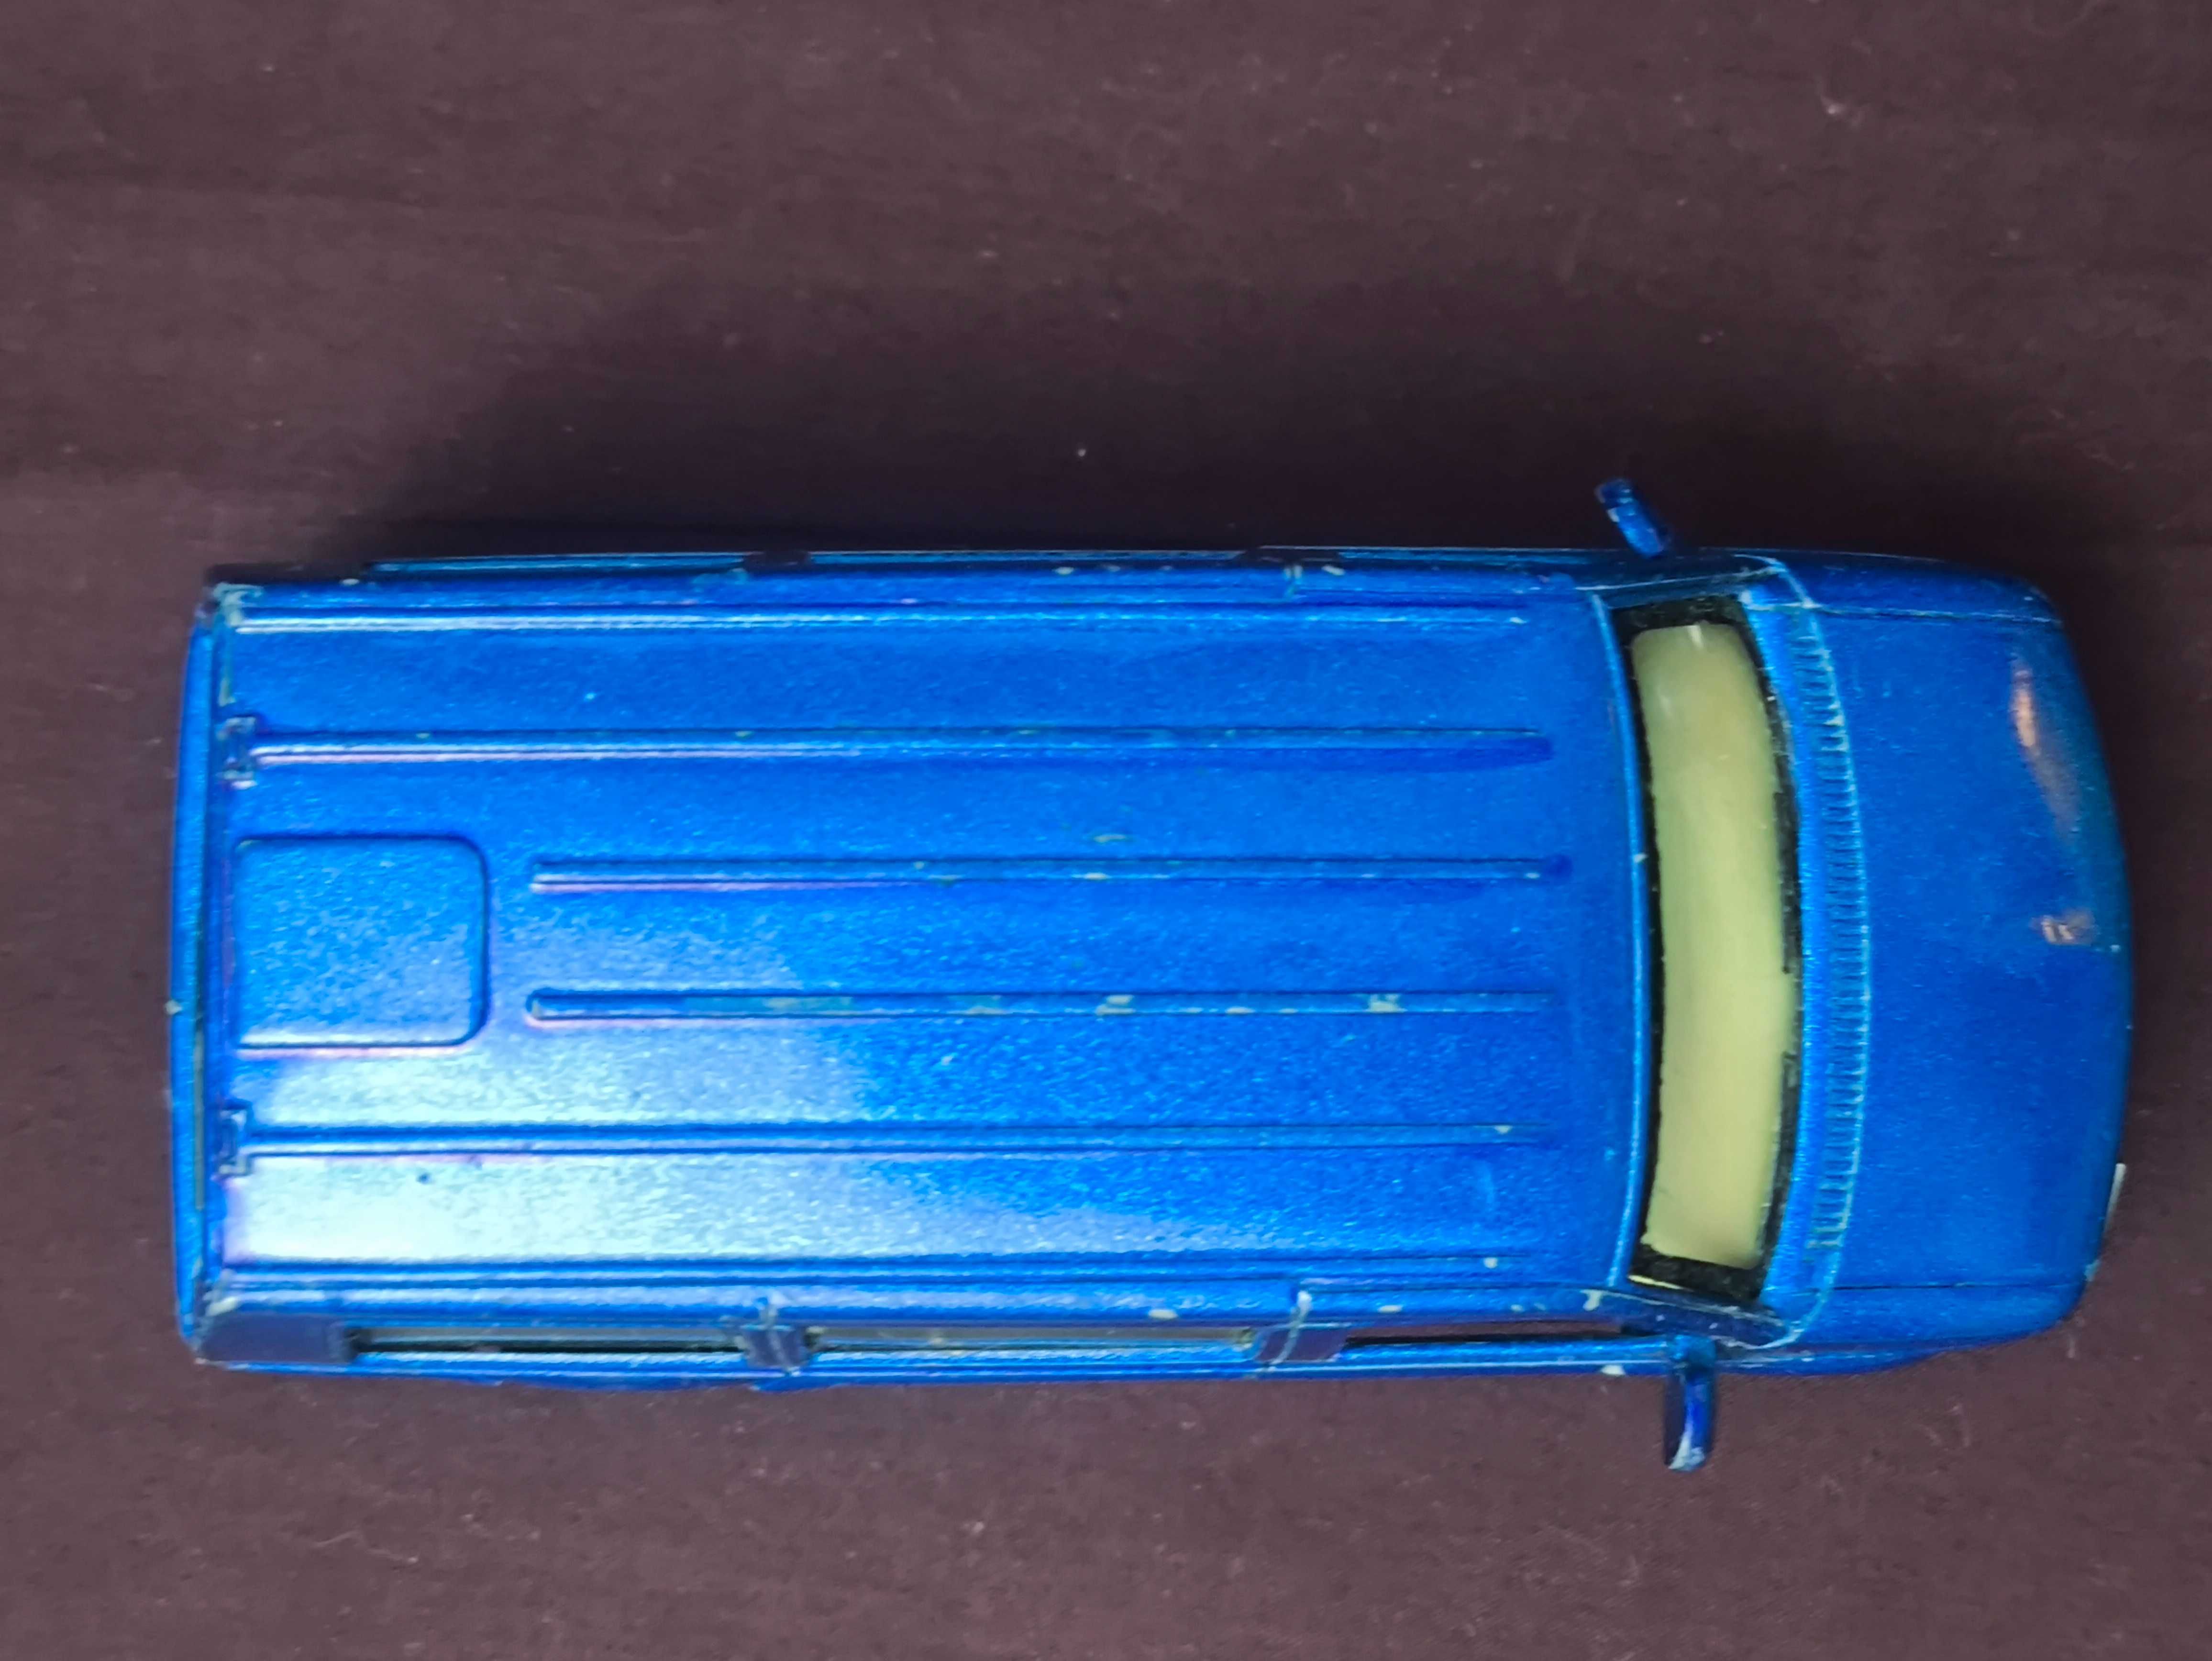 Машинка инерционная Astro Van 2001 1:38 Kinsmart Синяя